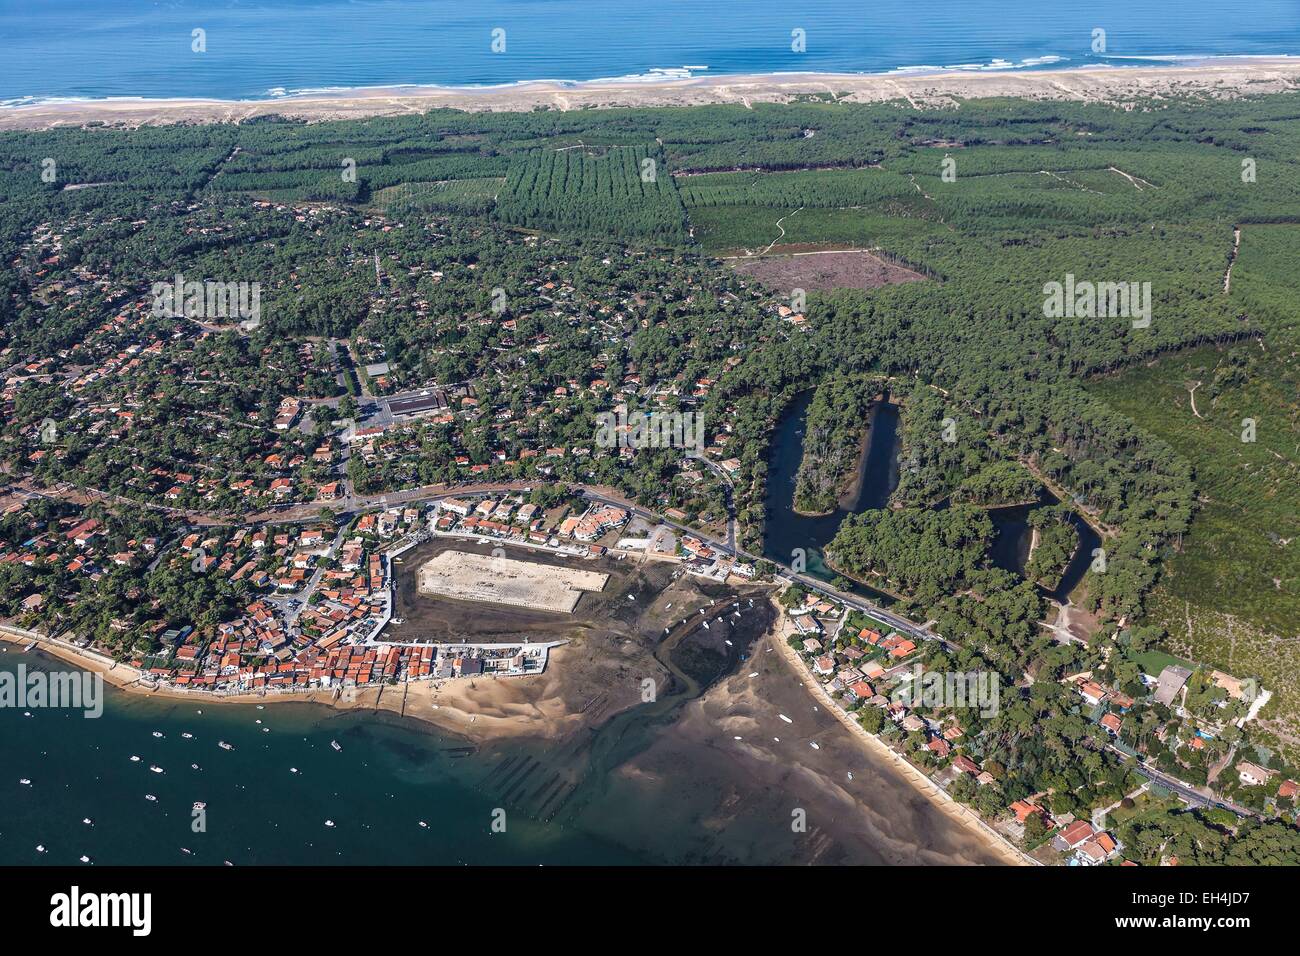 Francia, Gironde, Lege Cap Ferret, Piraillan, el balneario de la Bassin d'Arcachon y el bosque de pinos (vista aérea) Foto de stock